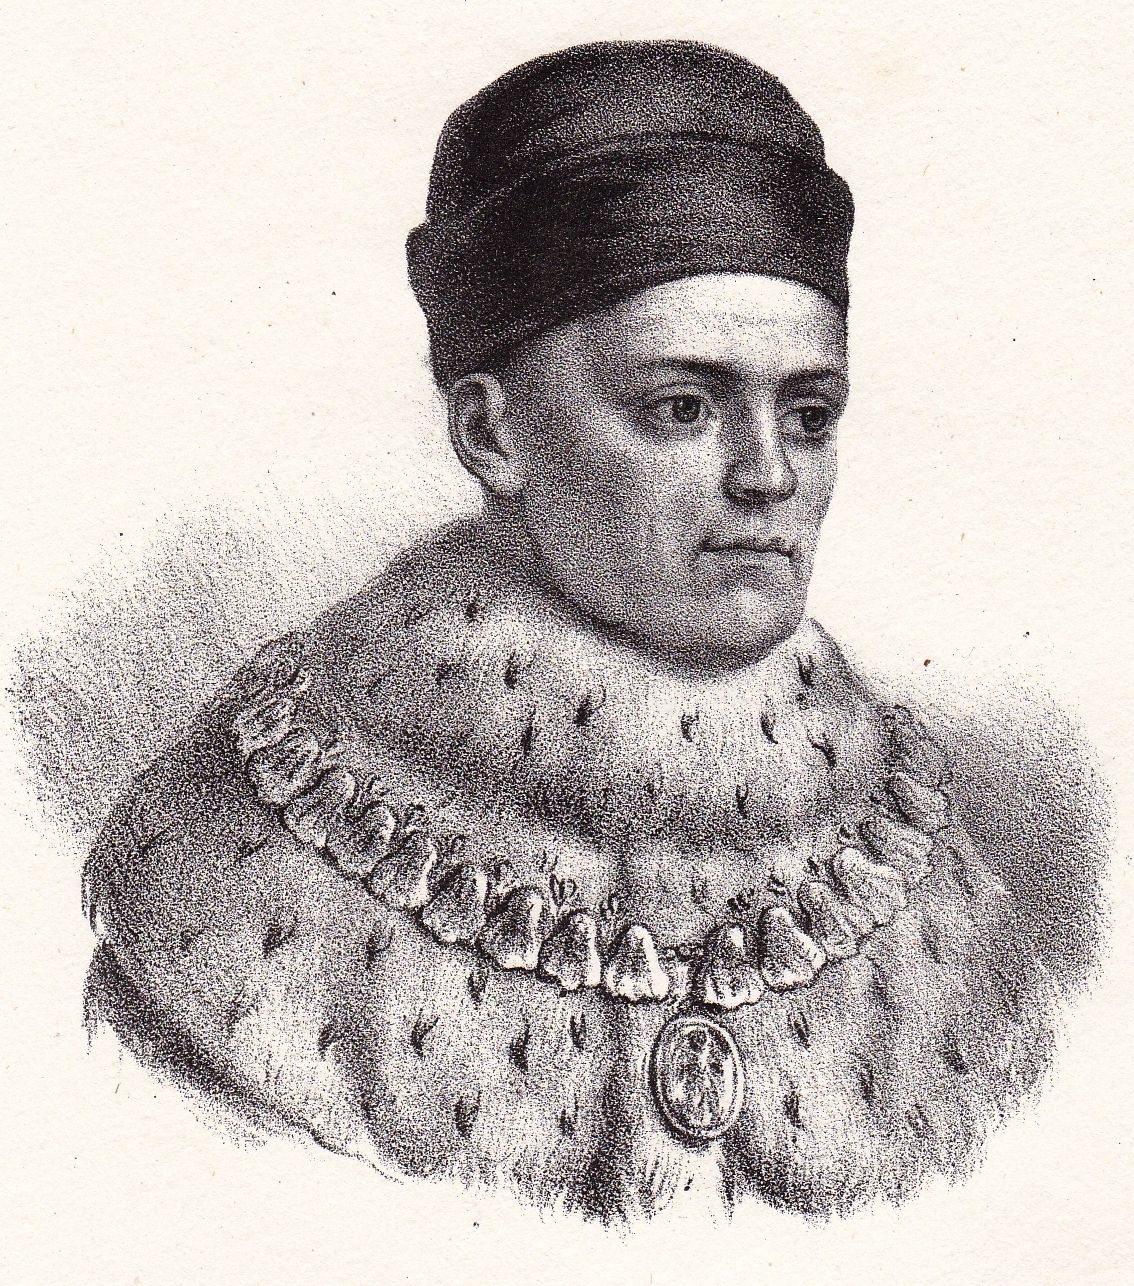 René d'Anjou